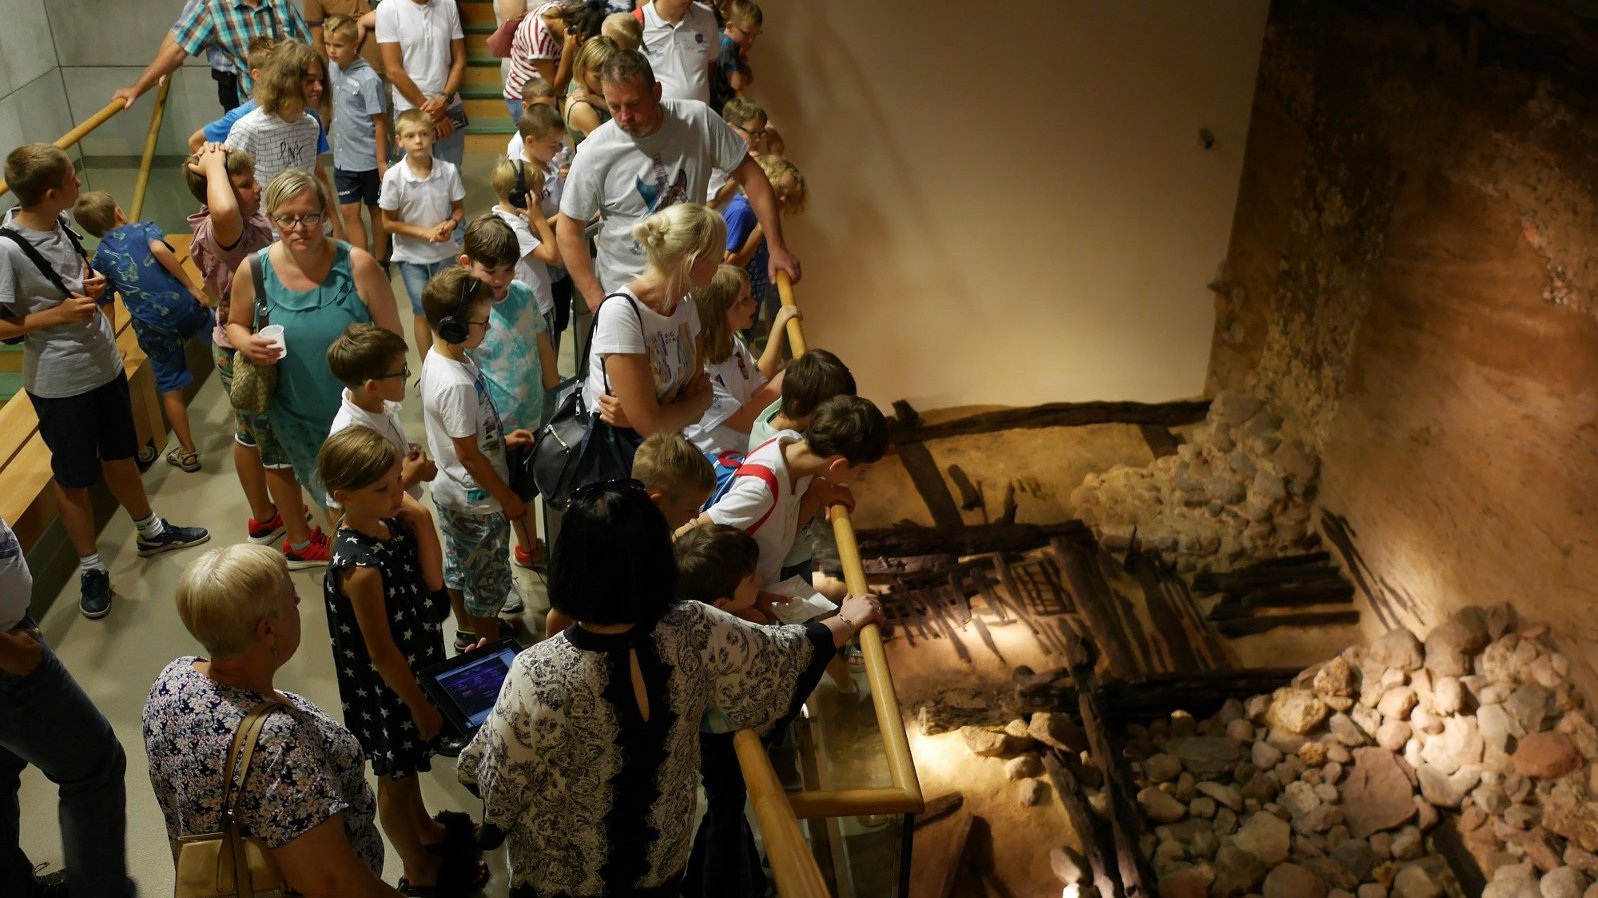 Duża grupa zwiedzających, w różnym wieku, zwiedza ekspozycje i spogląda na zachowane relikty wału obronnego Ostrowa Tumskiego z czasów piastowskich.